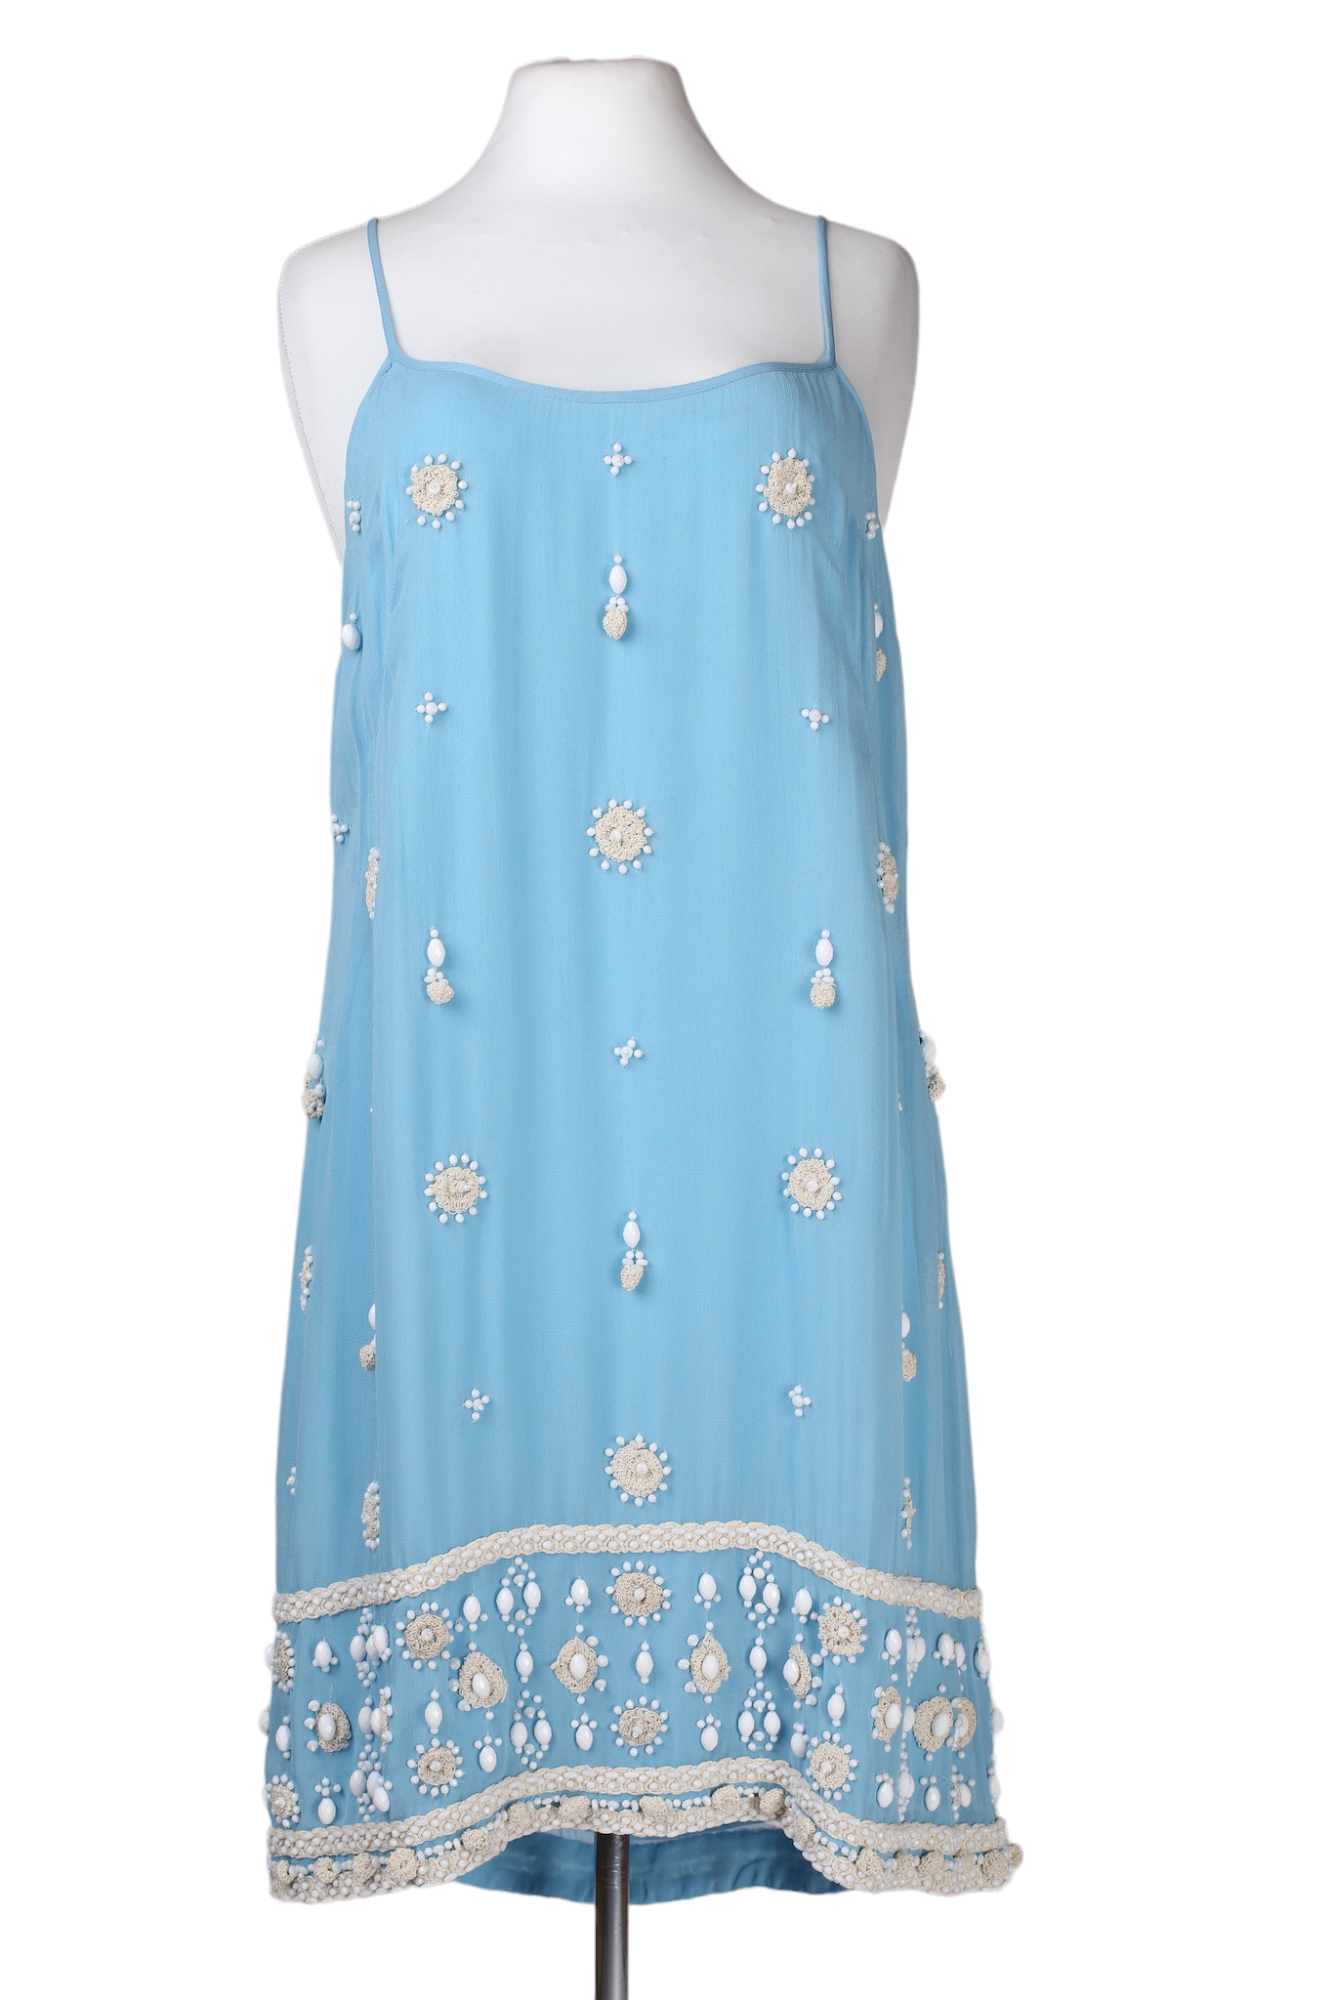 فستان صيفي قصير مع تطريز من متجر فرينش كونيكشن